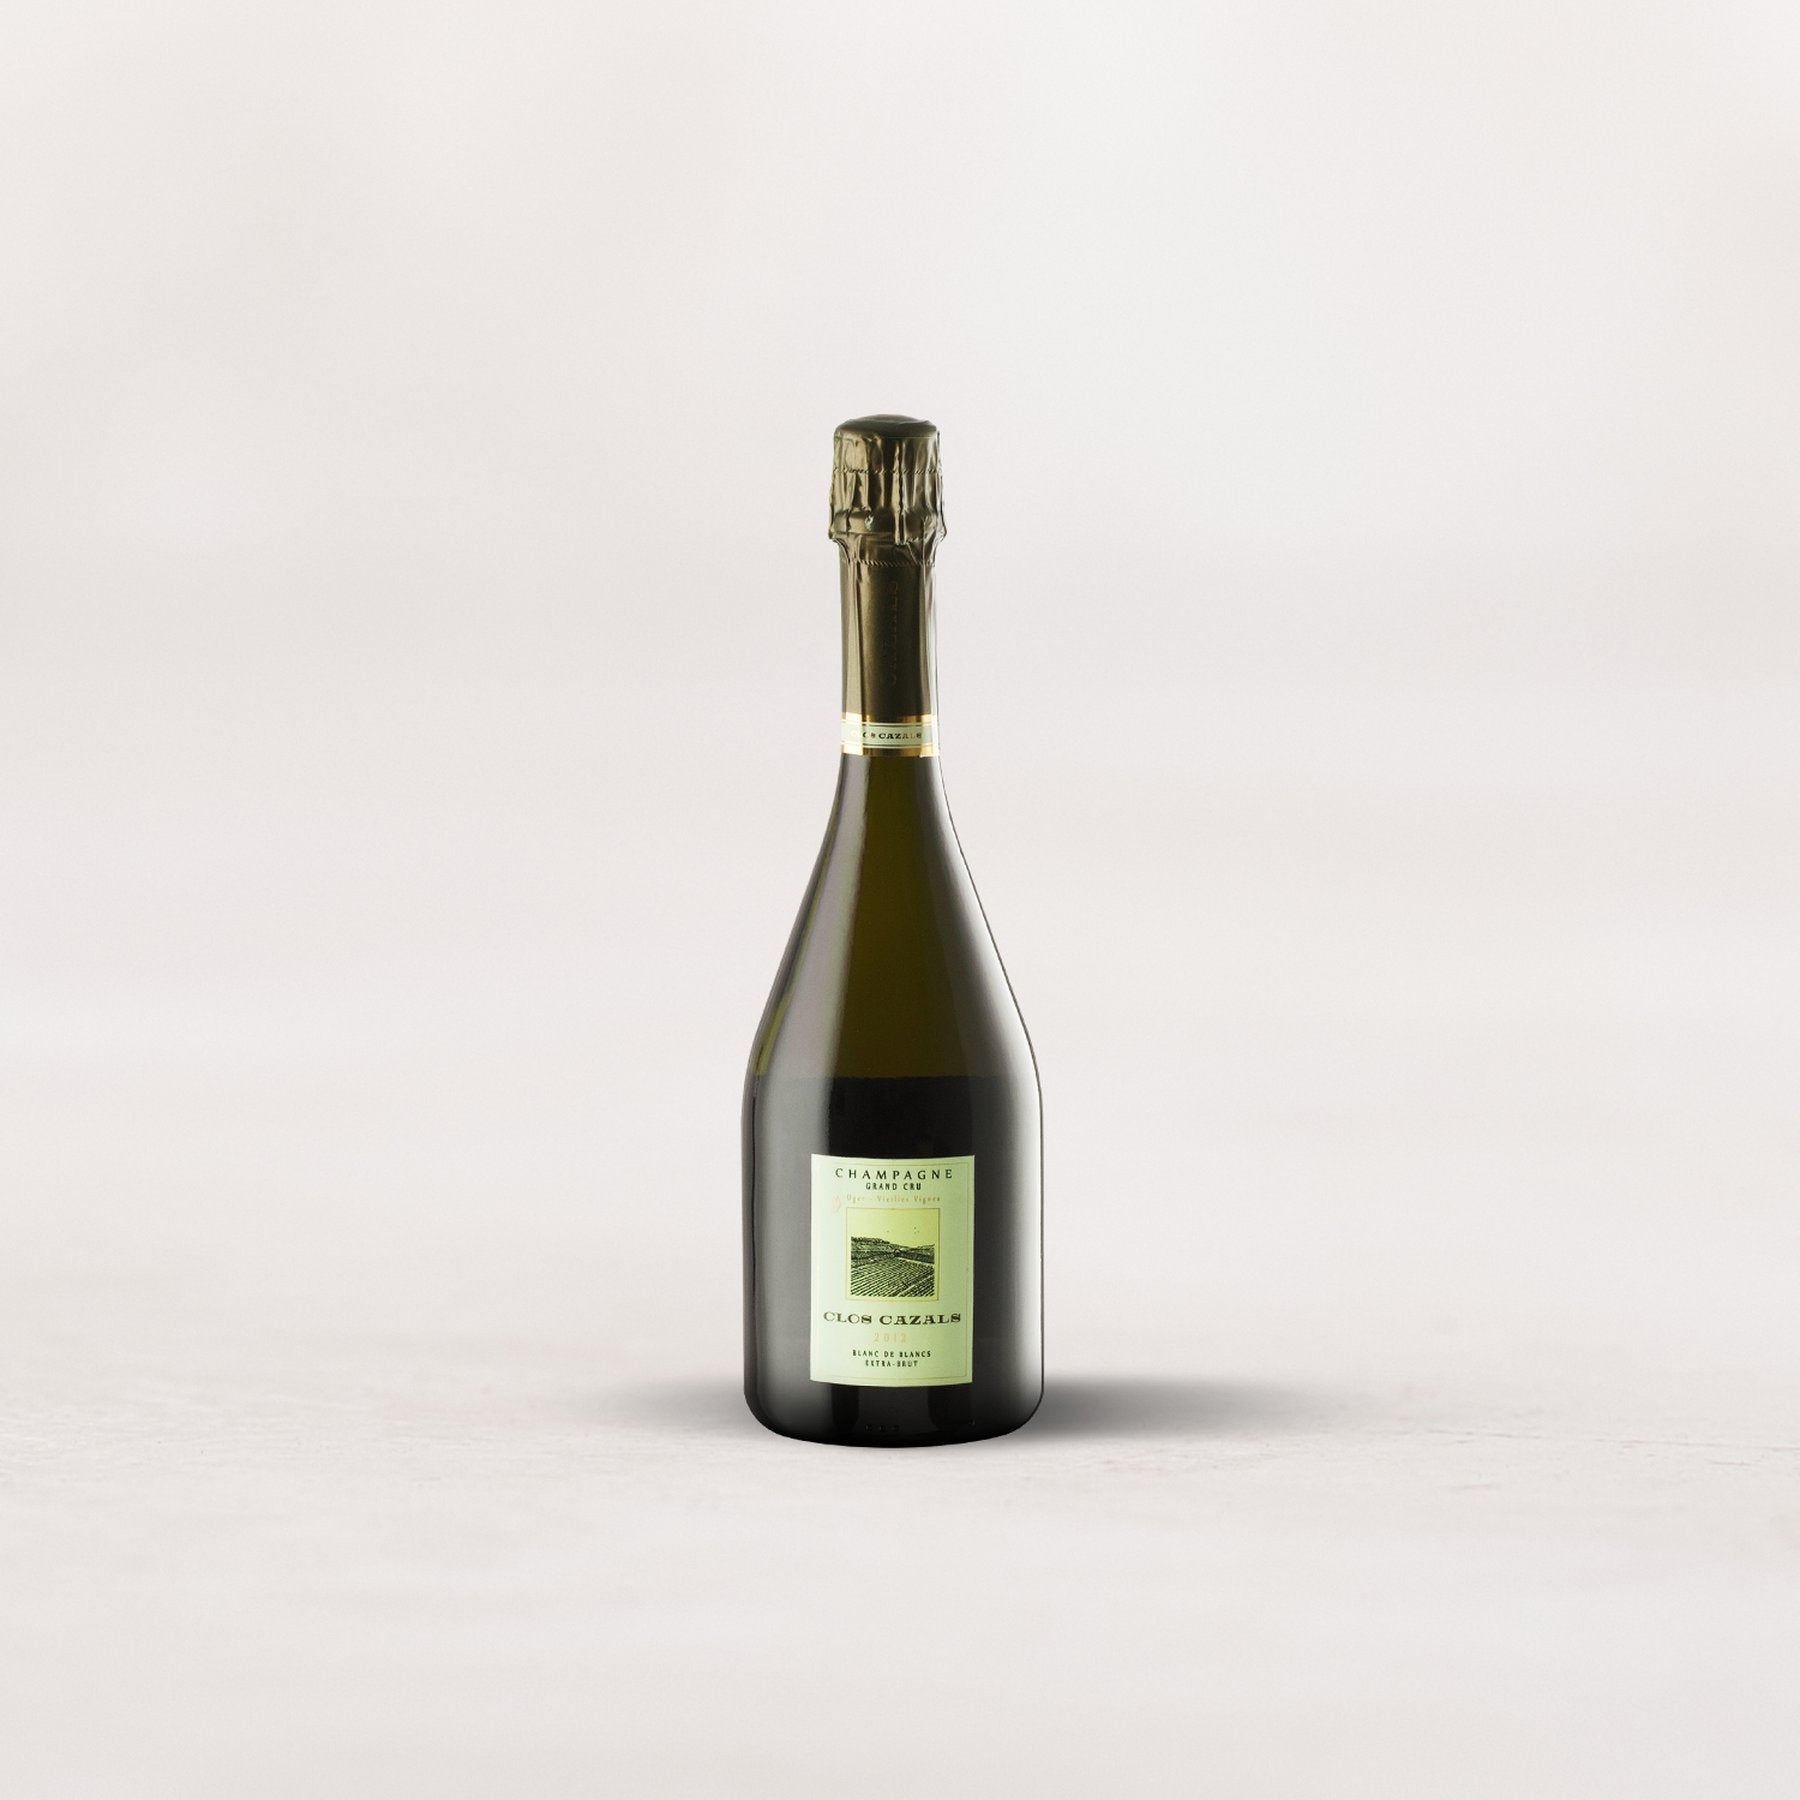 Champagne Claude Cazals, “Clos Cazals” Grand Cru Millésime